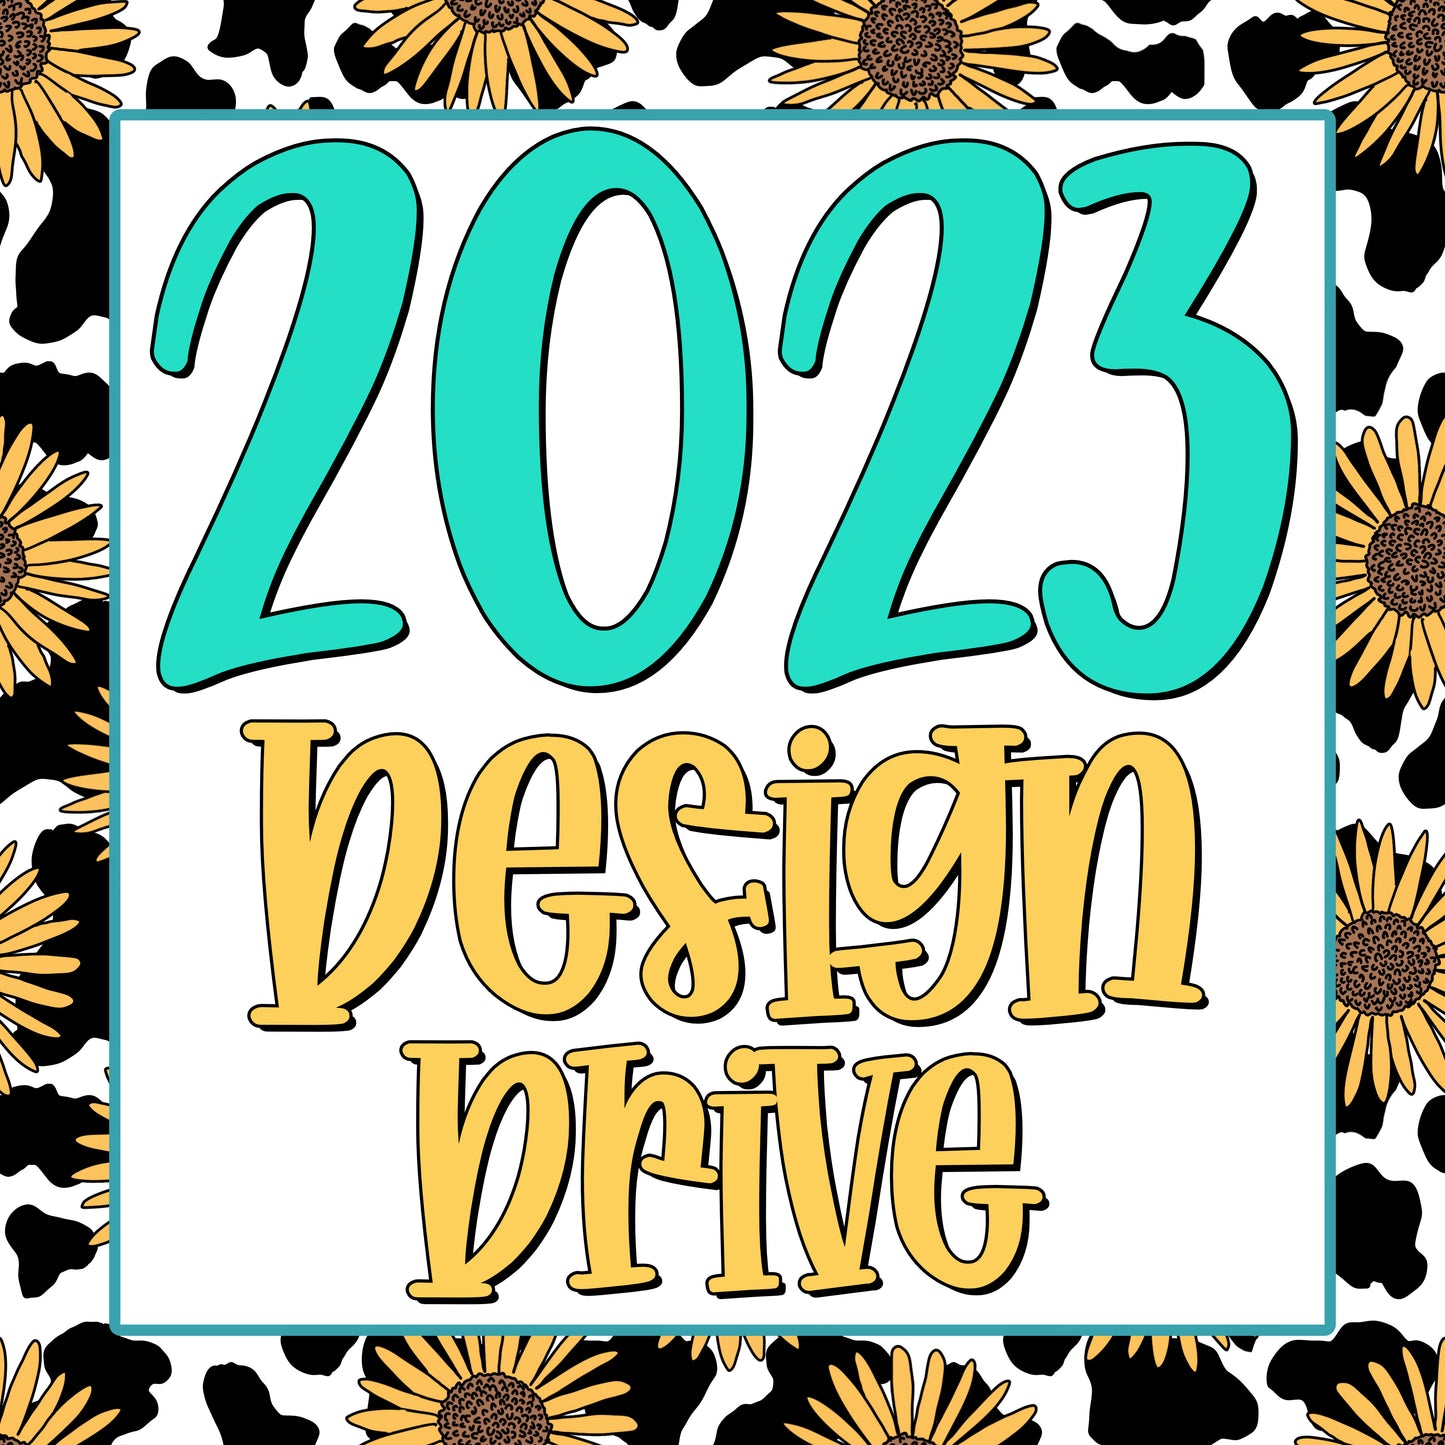 2023 Design Drive